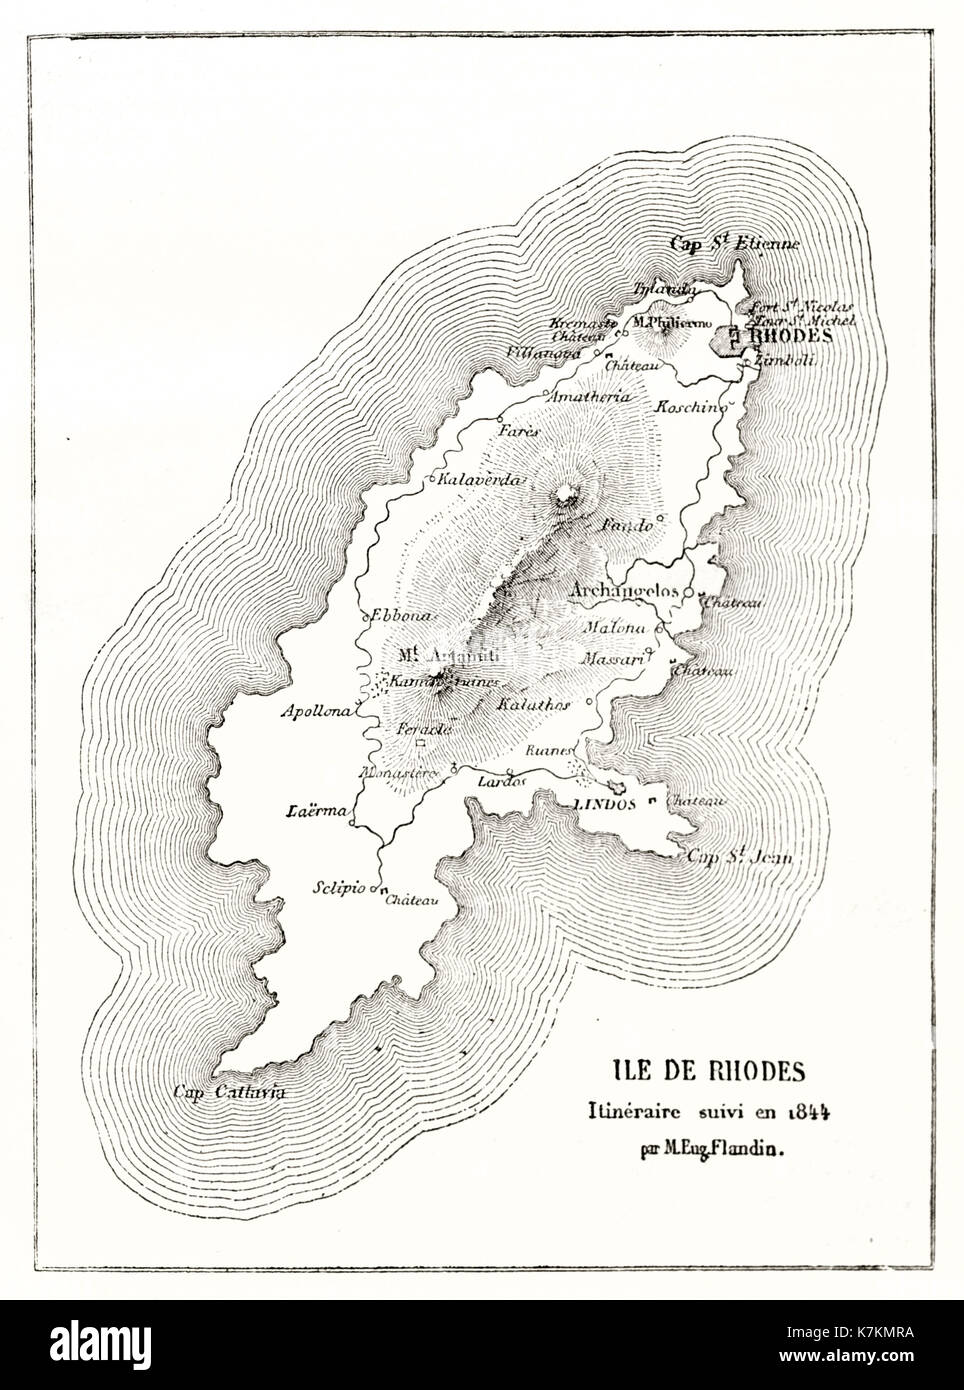 map islands decadonese